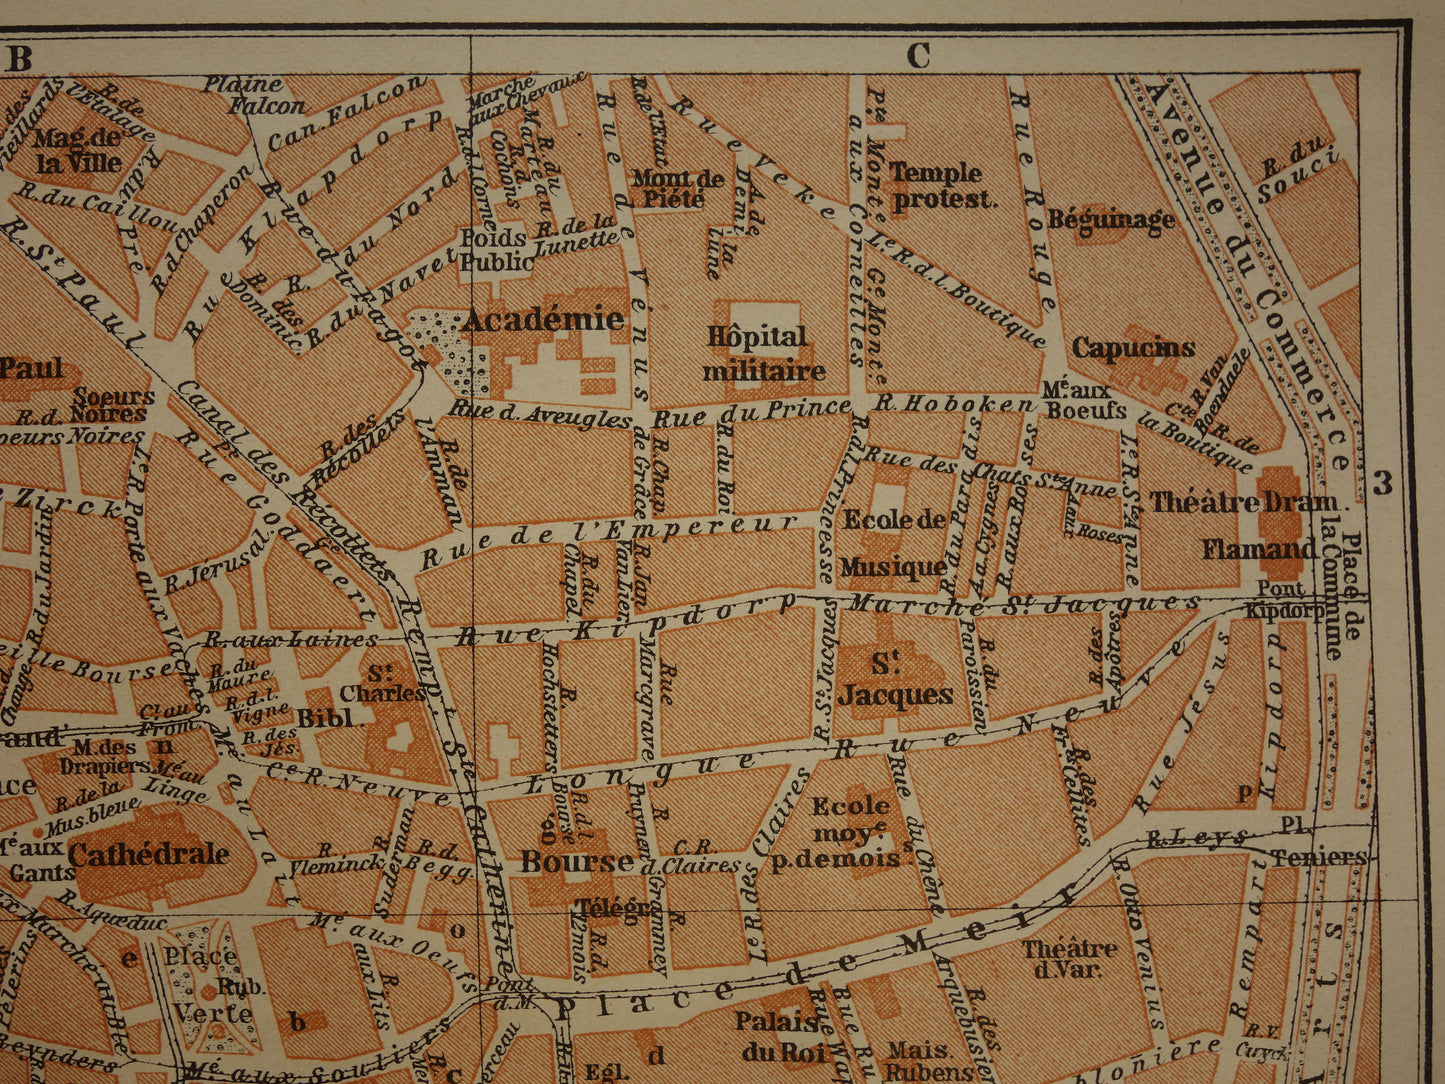 ANTWERPEN oude kaart van Antwerpen centrum België uit 1904 kleine originele antieke plattegrond landkaart